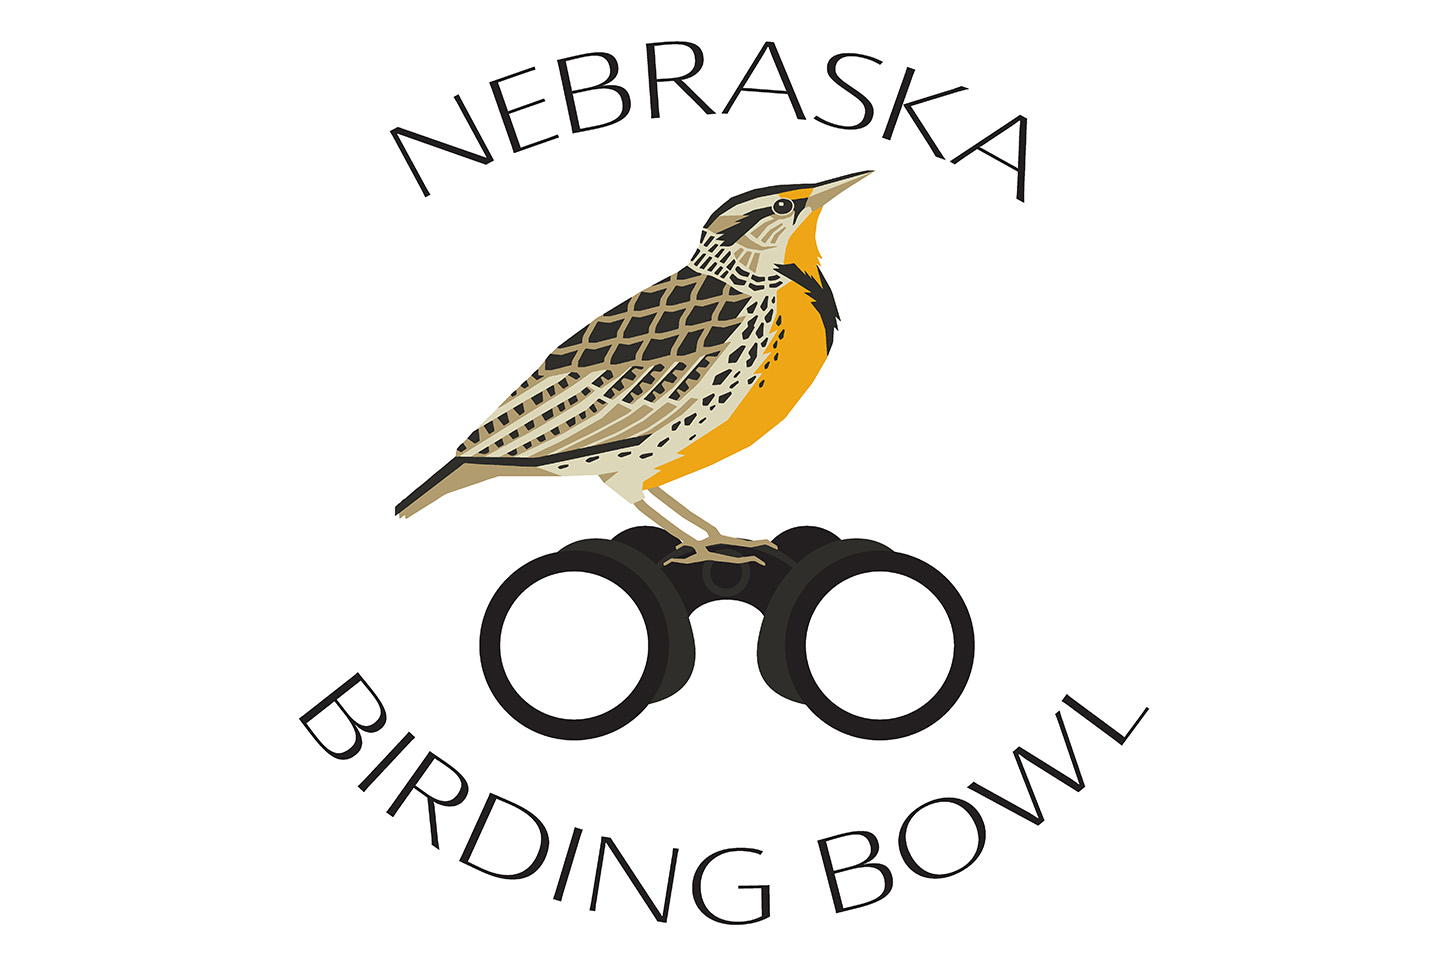 Nebraska Birding Bowl returns this May